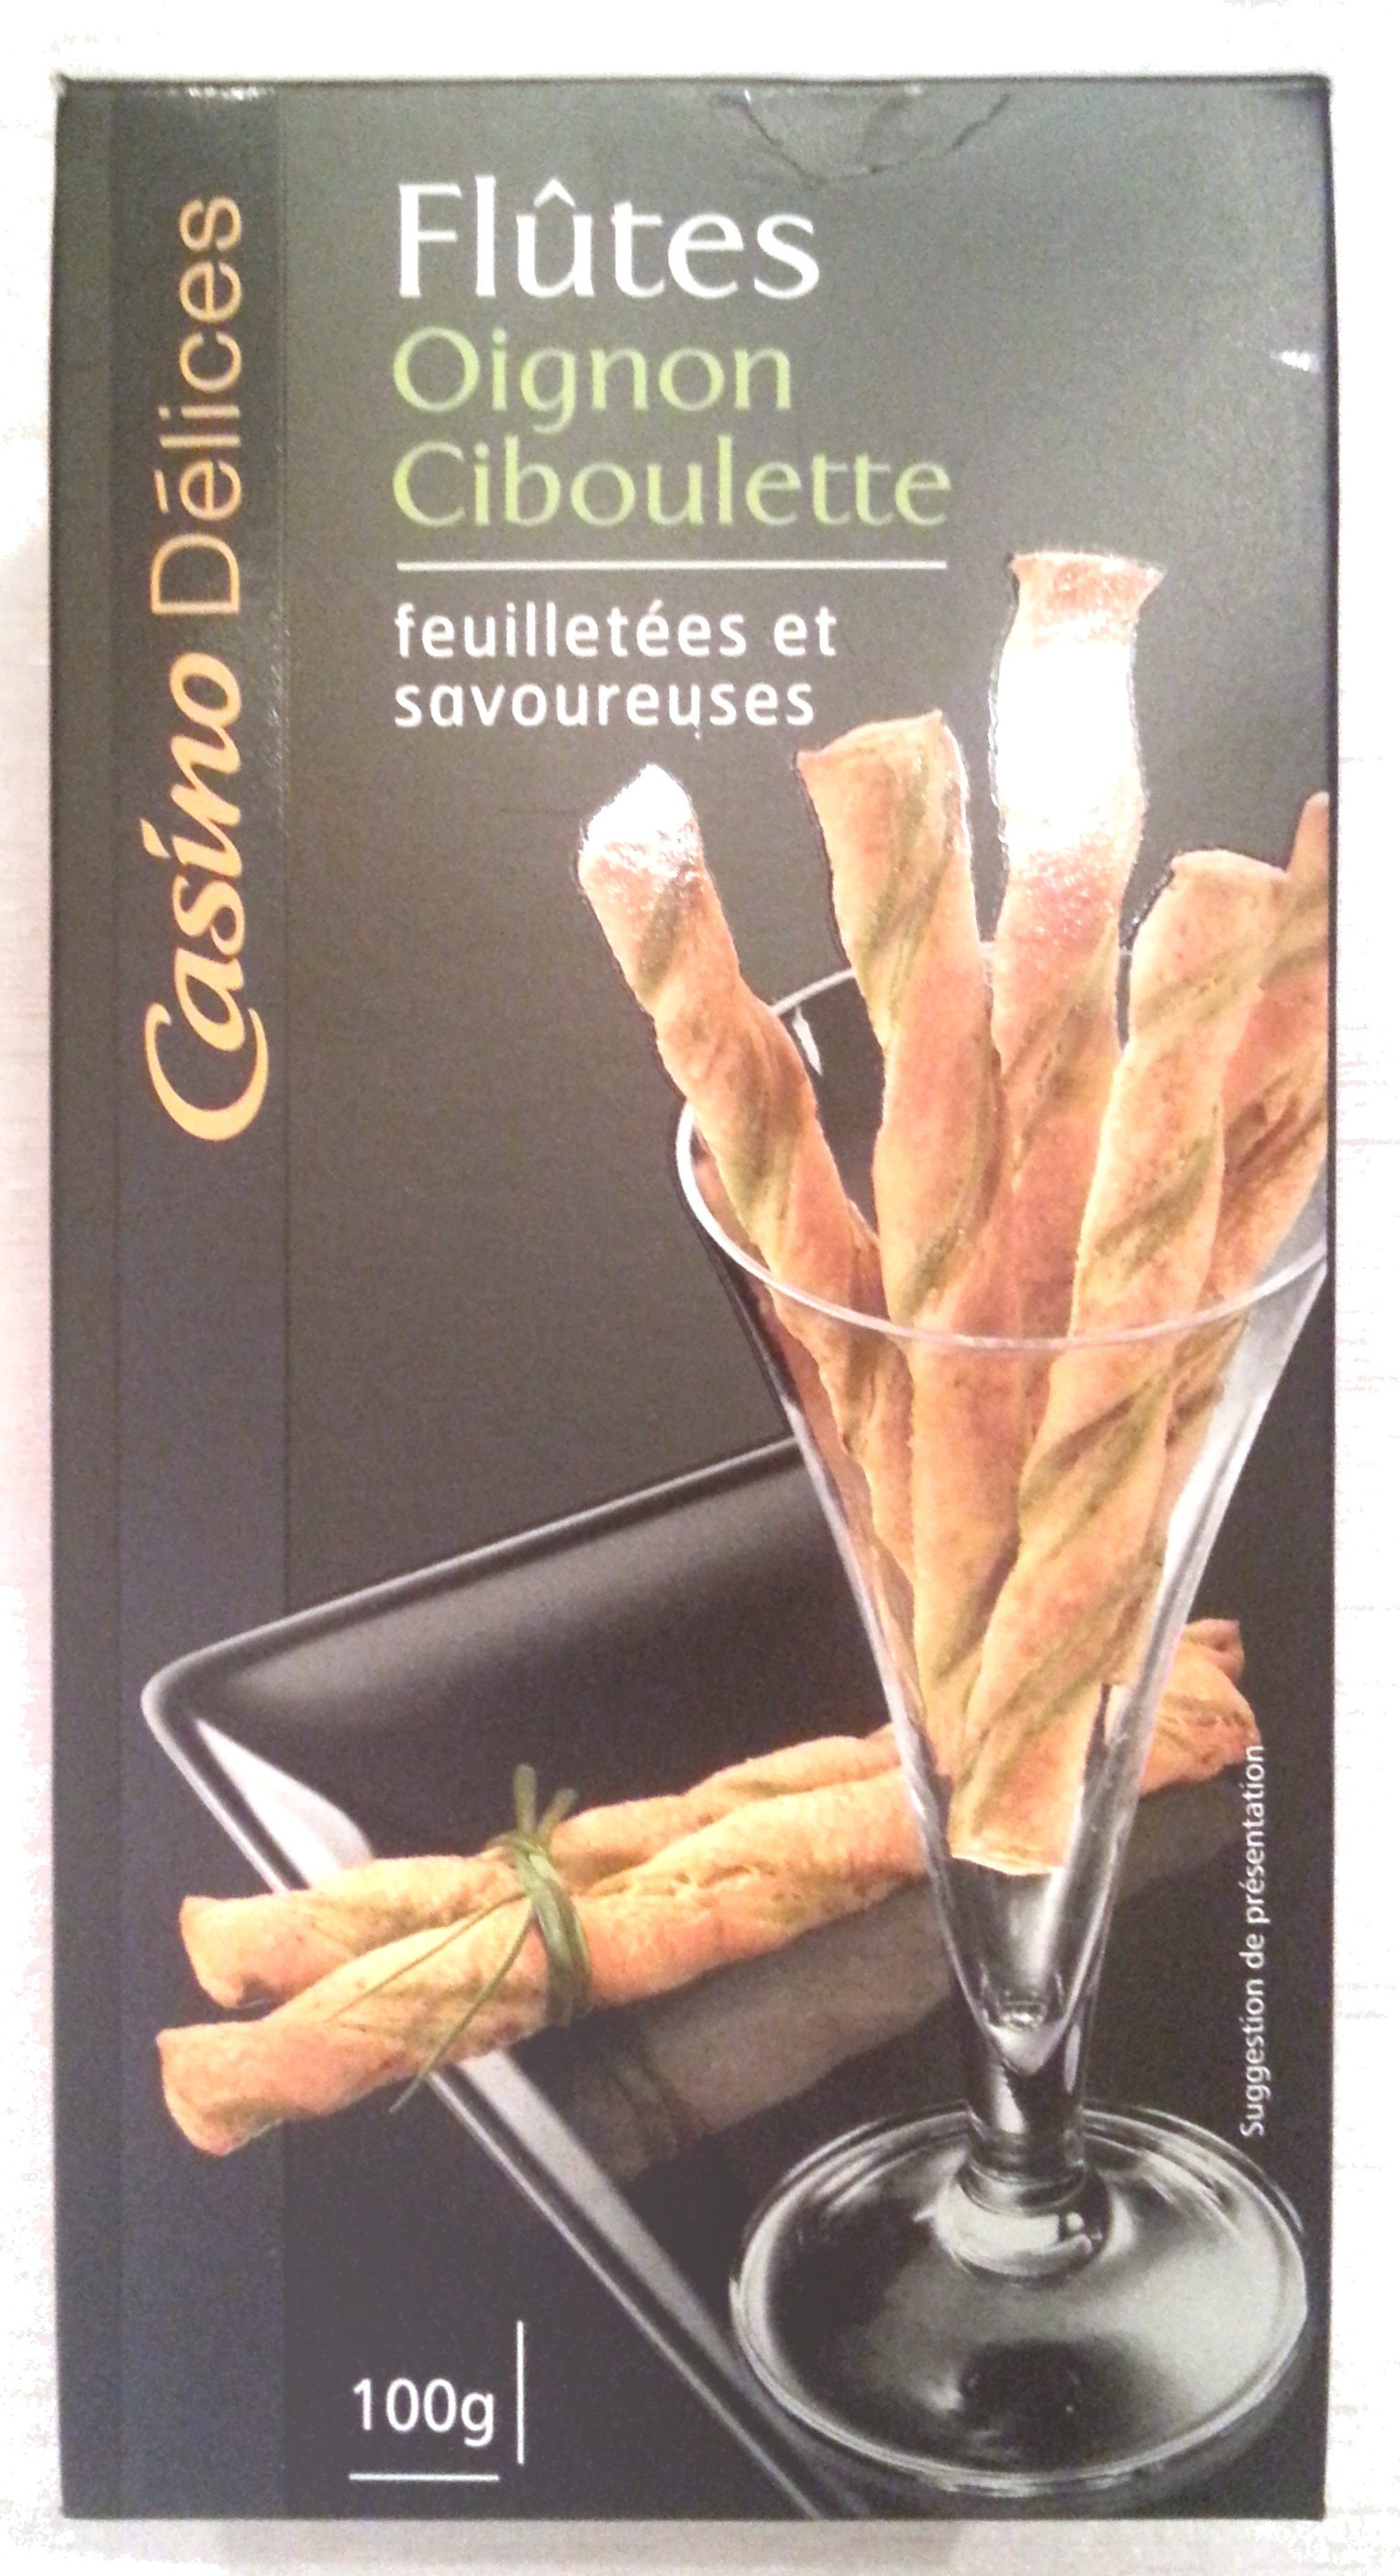 Flûtes Oignon Ciboulette - Product - fr